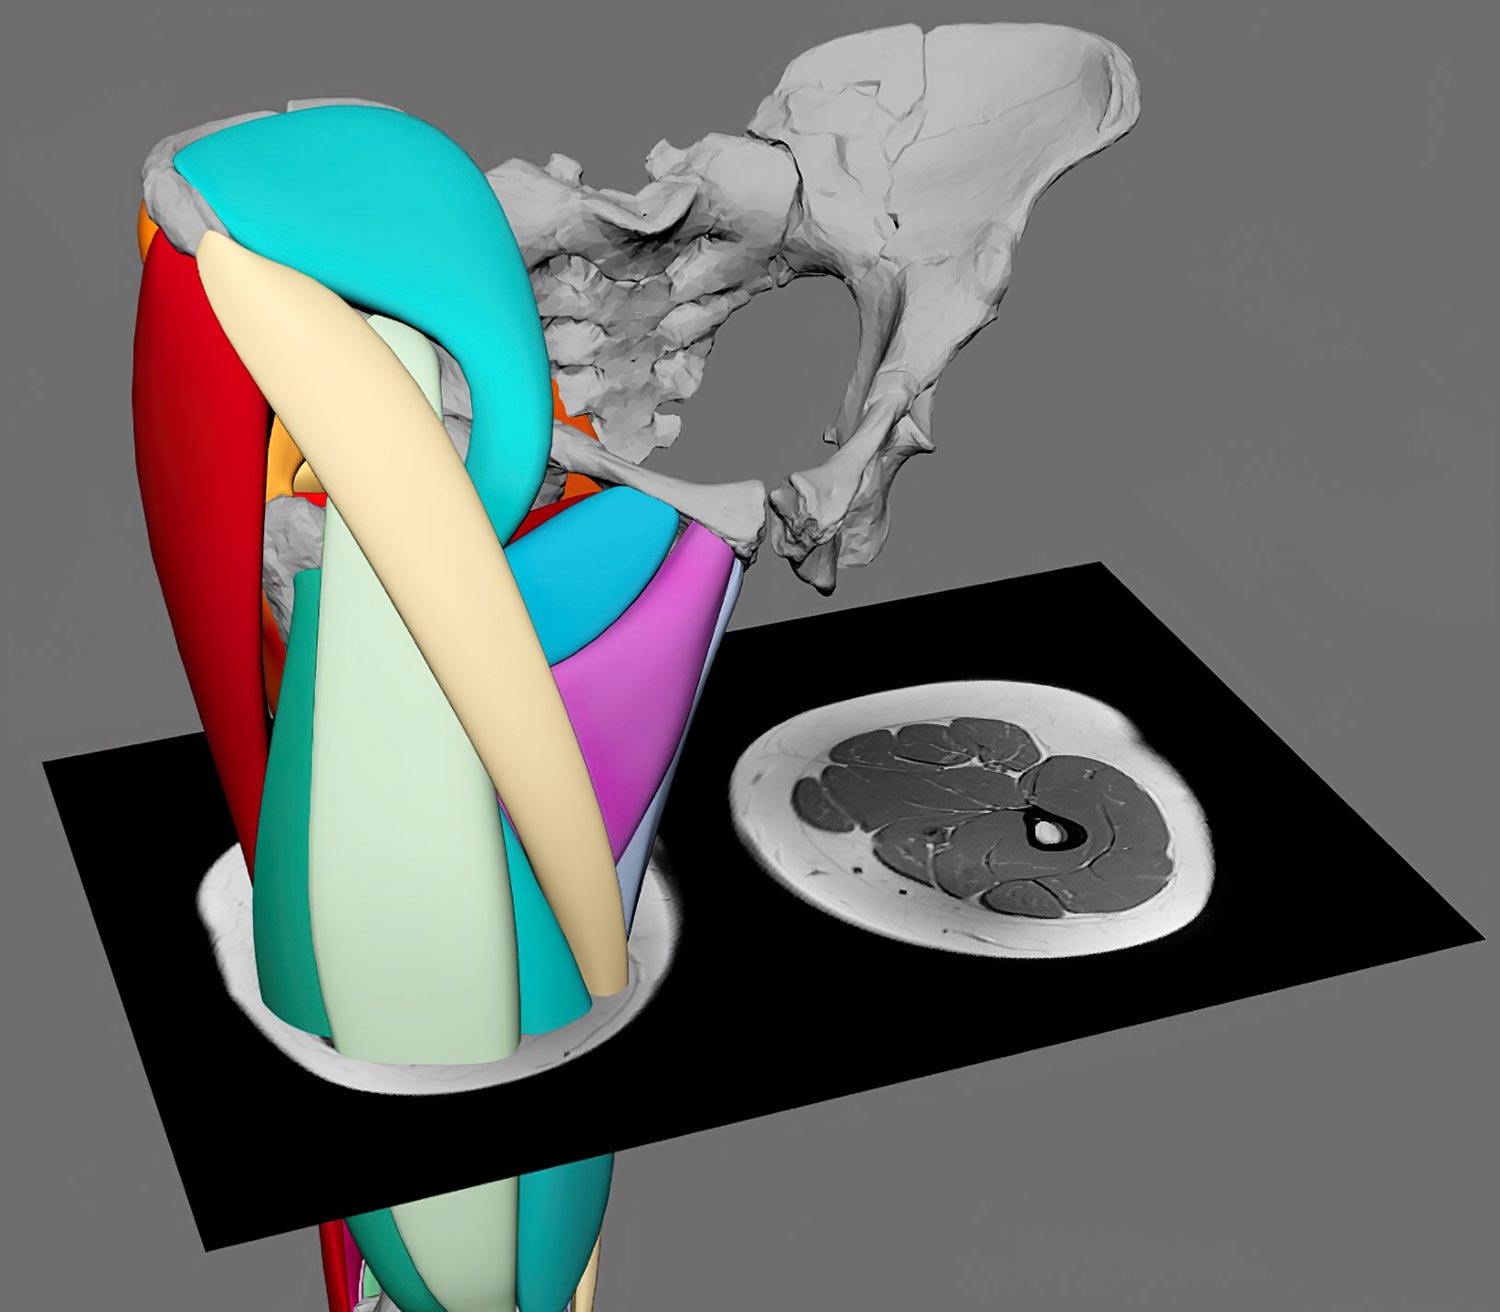 A reconstrução muscular em 3D revela que ‘Lucy’ de 3,2 milhões de anos poderia ficar de pé como os humanos modernos